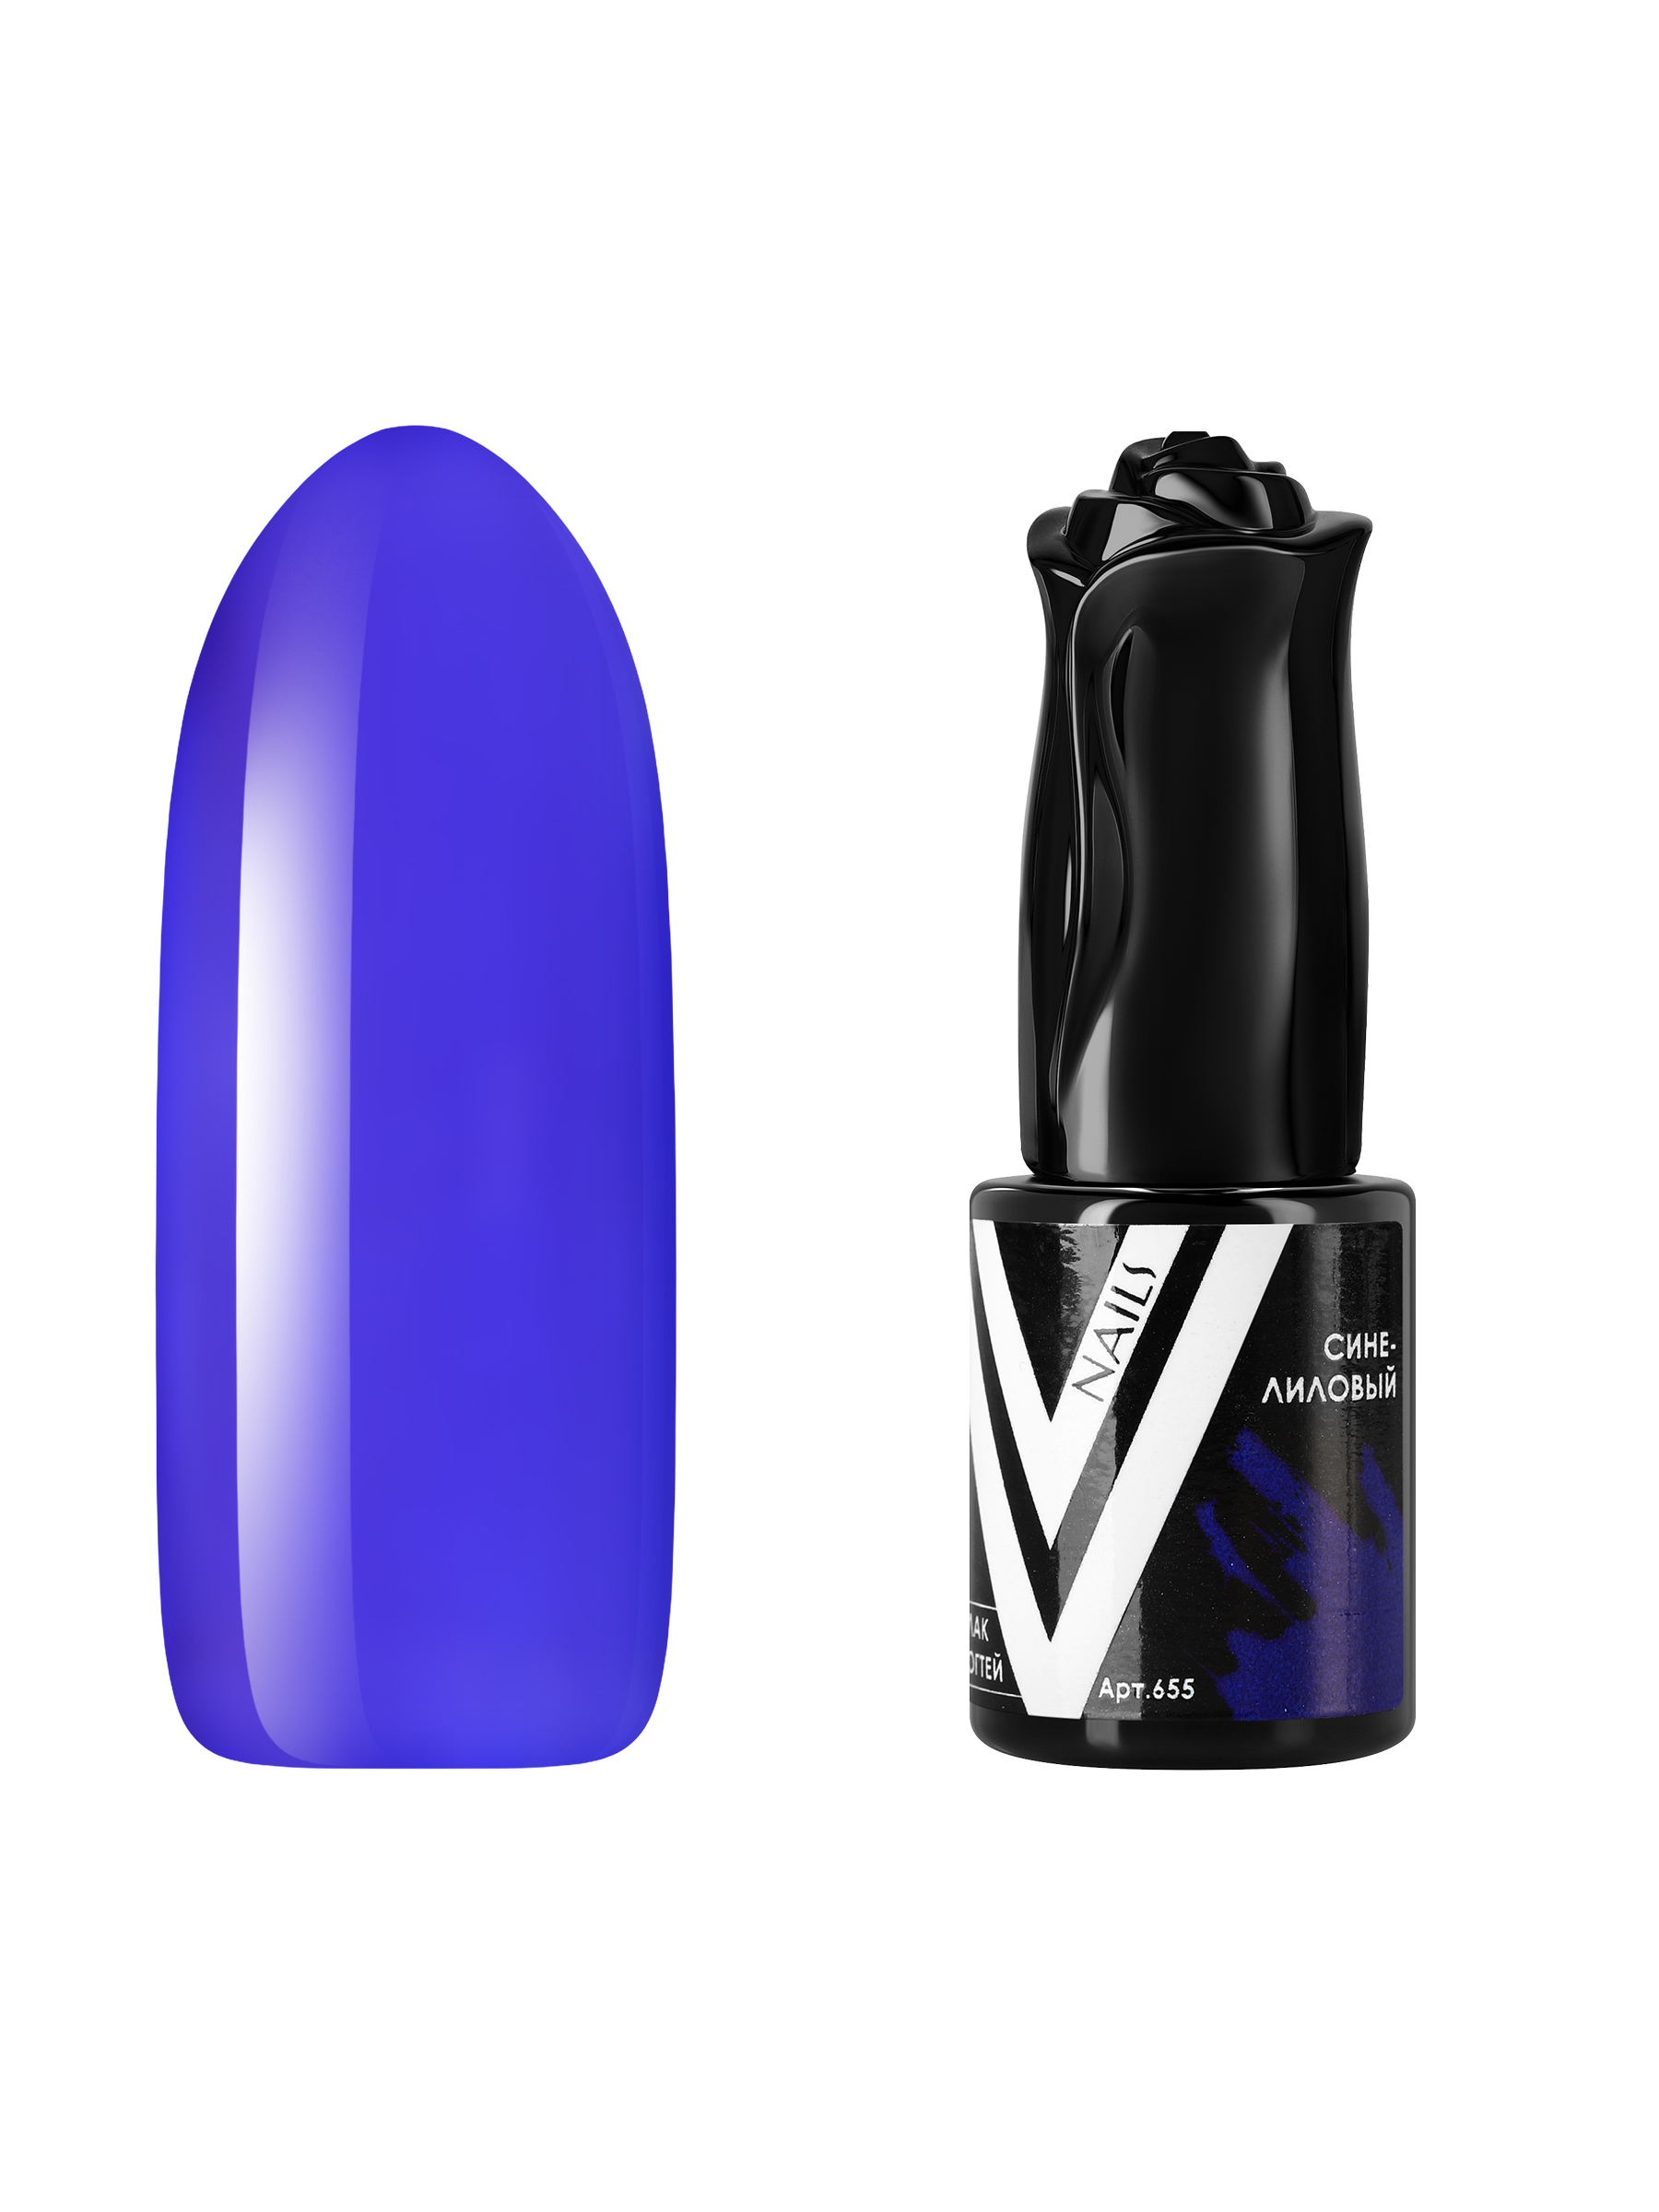 Гель-лак витражный Vogue Nails для аквариумного дизайна прозрачный фиолетовый синий, 10 мл сачок аквариумный 7 5 см синий